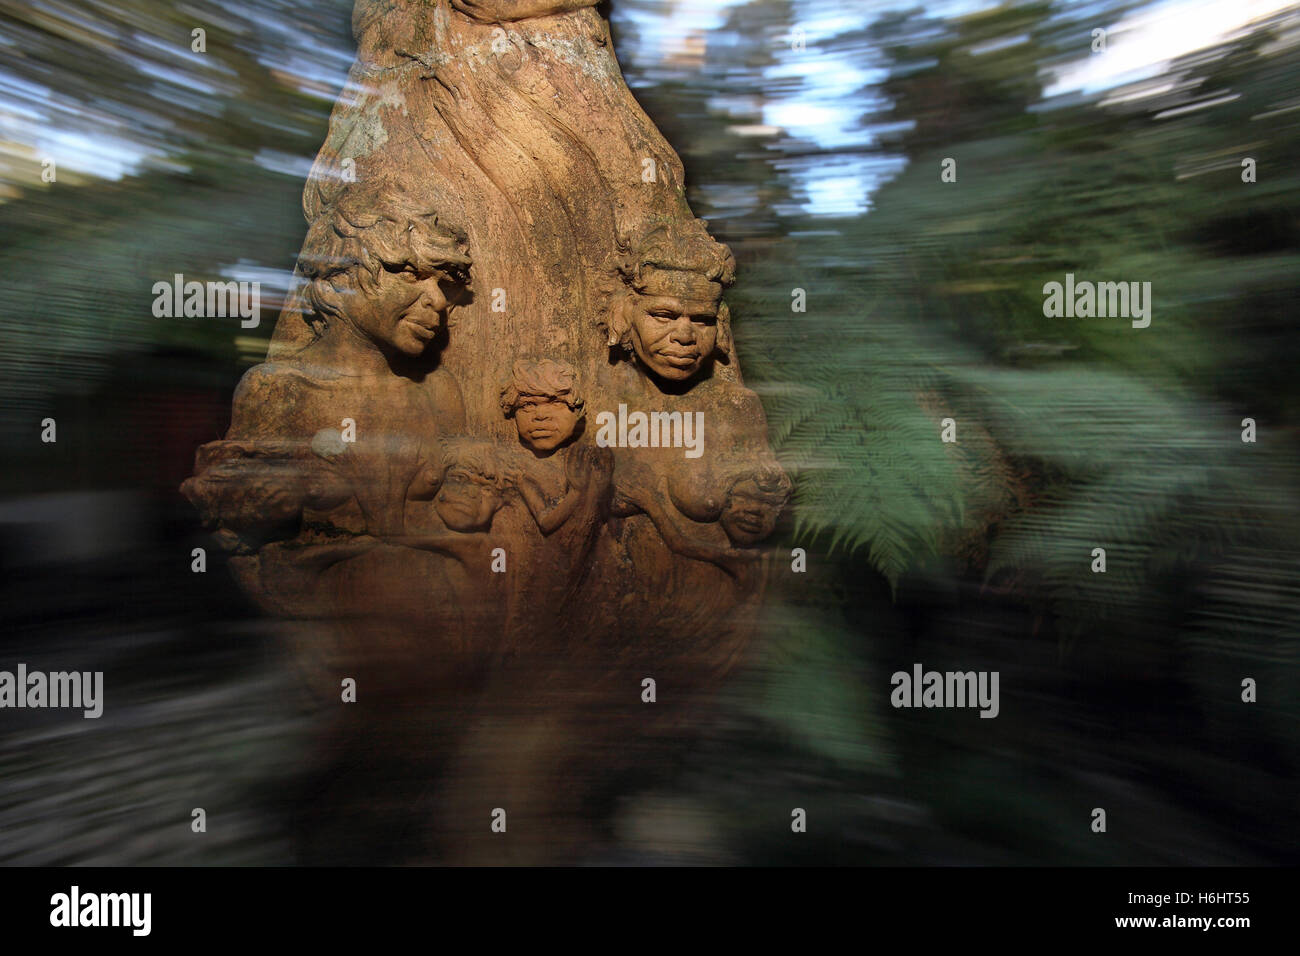 Sculptures of Aboriginal people at the William Rickett Sanctuary. Dandenong ranges, Victoria, Australia. Stock Photo